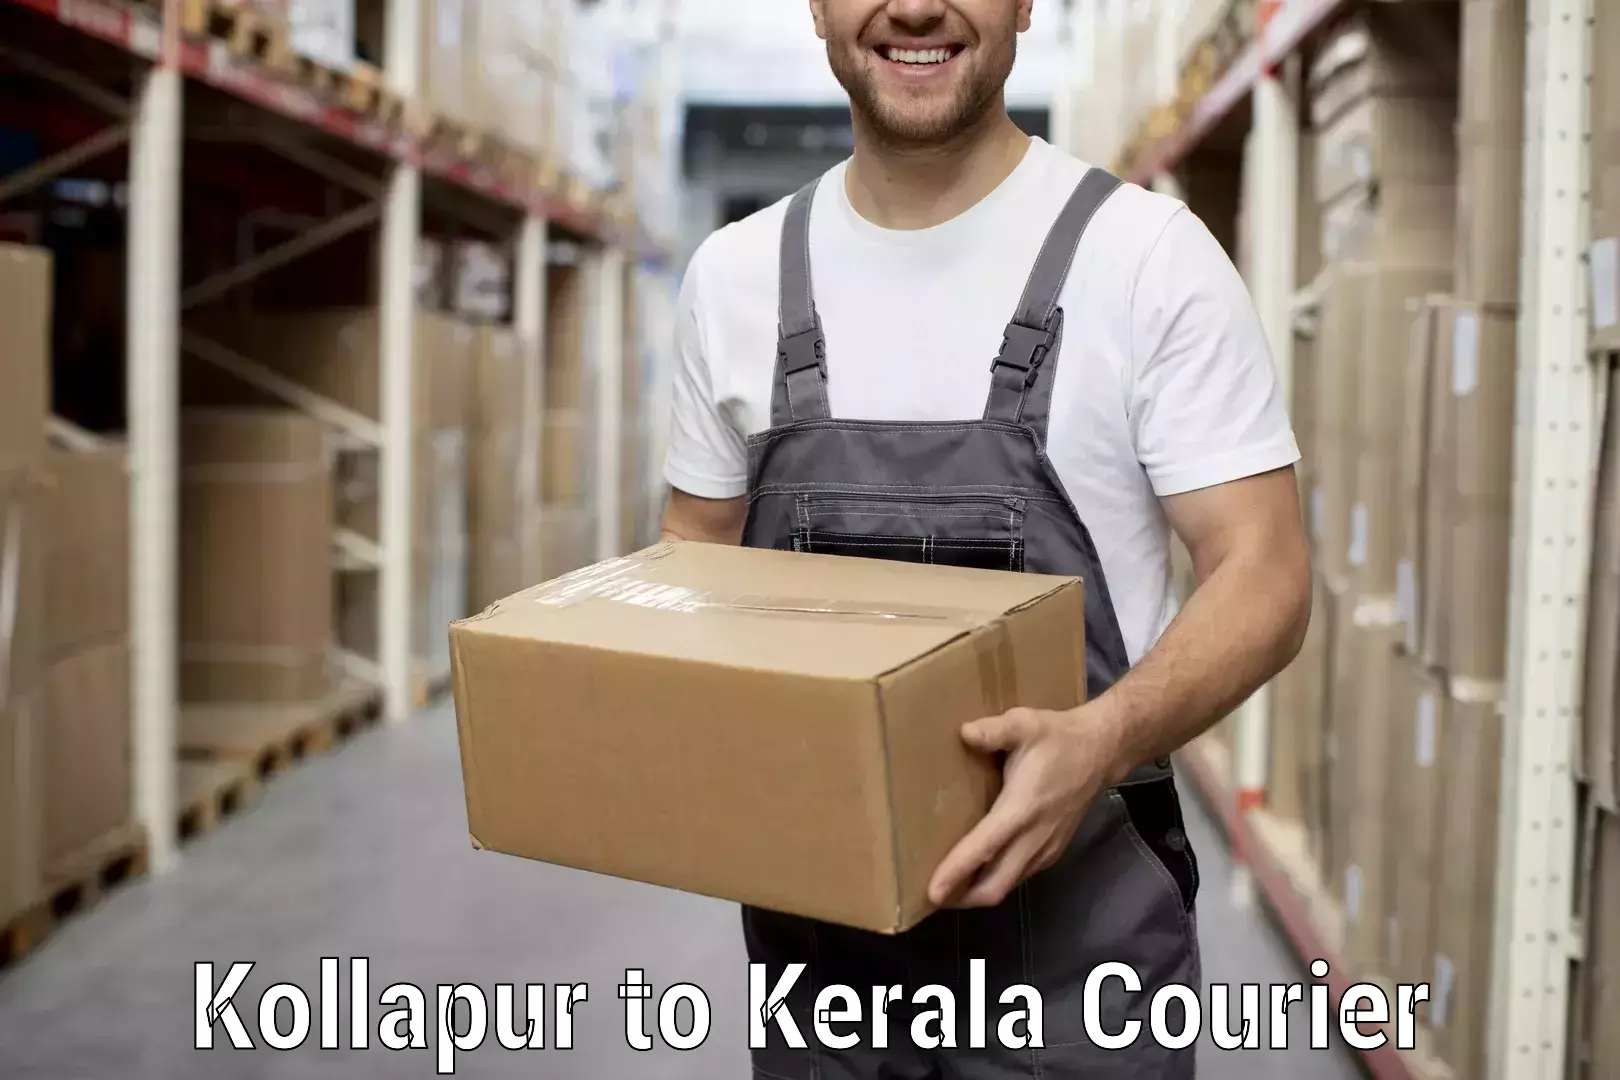 Furniture moving experts Kollapur to Kottayam